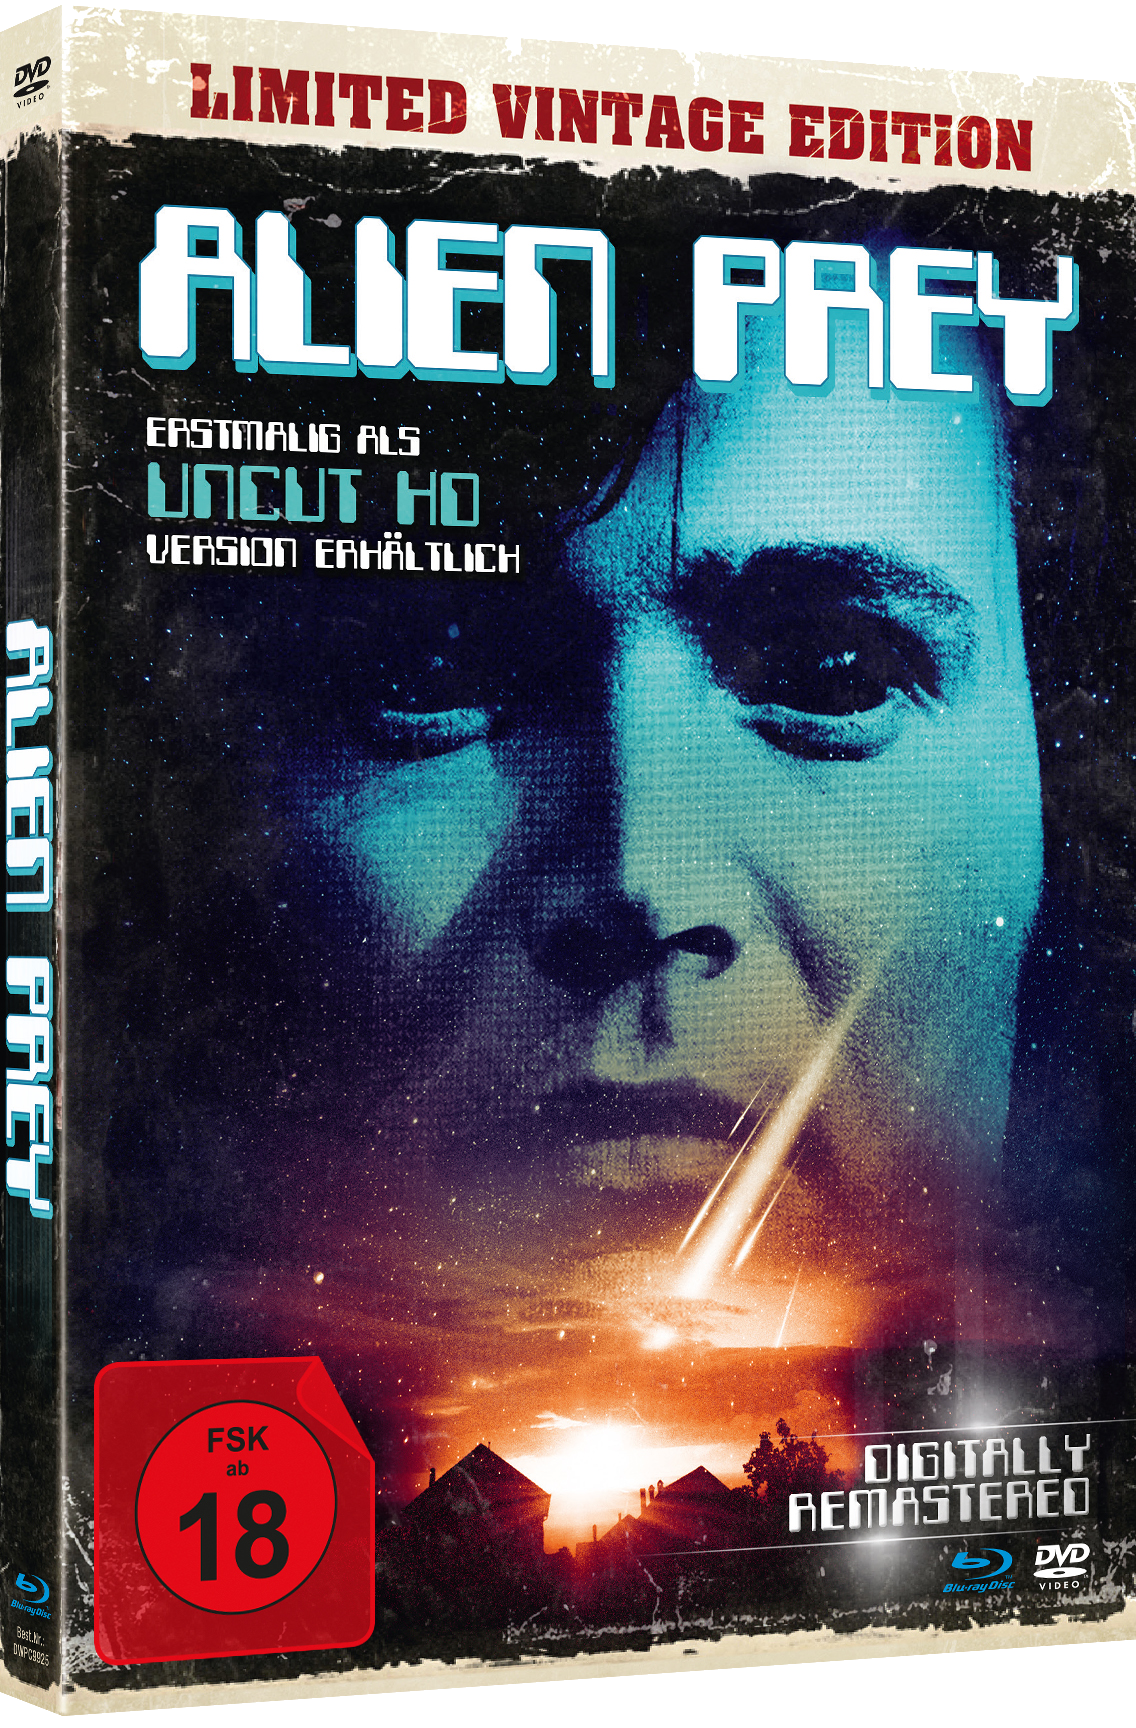 Alien Edition Mediabook) + (DVD+BD Blu-ray Prey-Uncut DVD